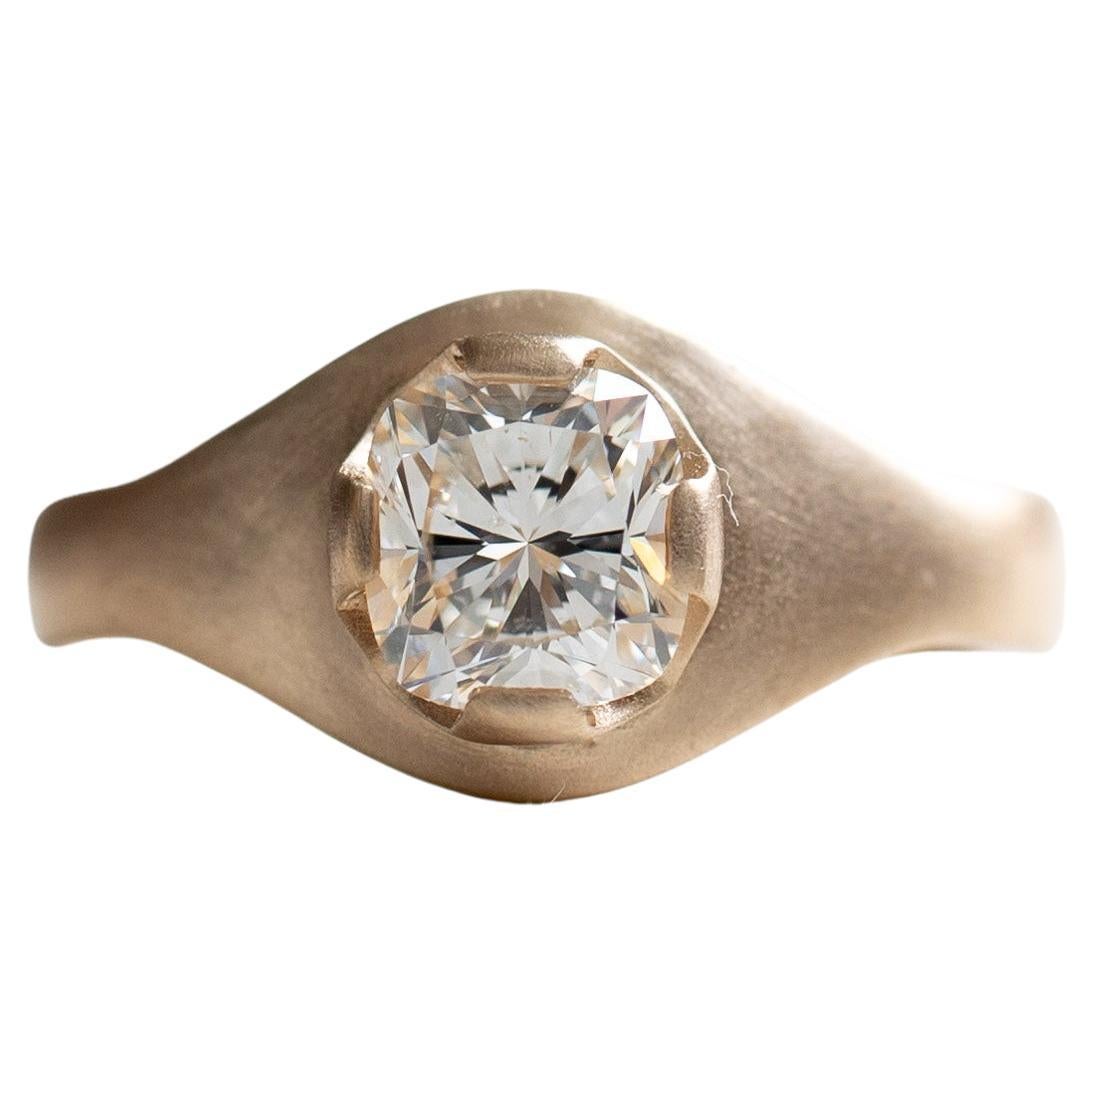 For Sale:  18 Karat Gold Diamond Signet Ring, GIA Certified 1 Carat Diamond Cocktail Ring